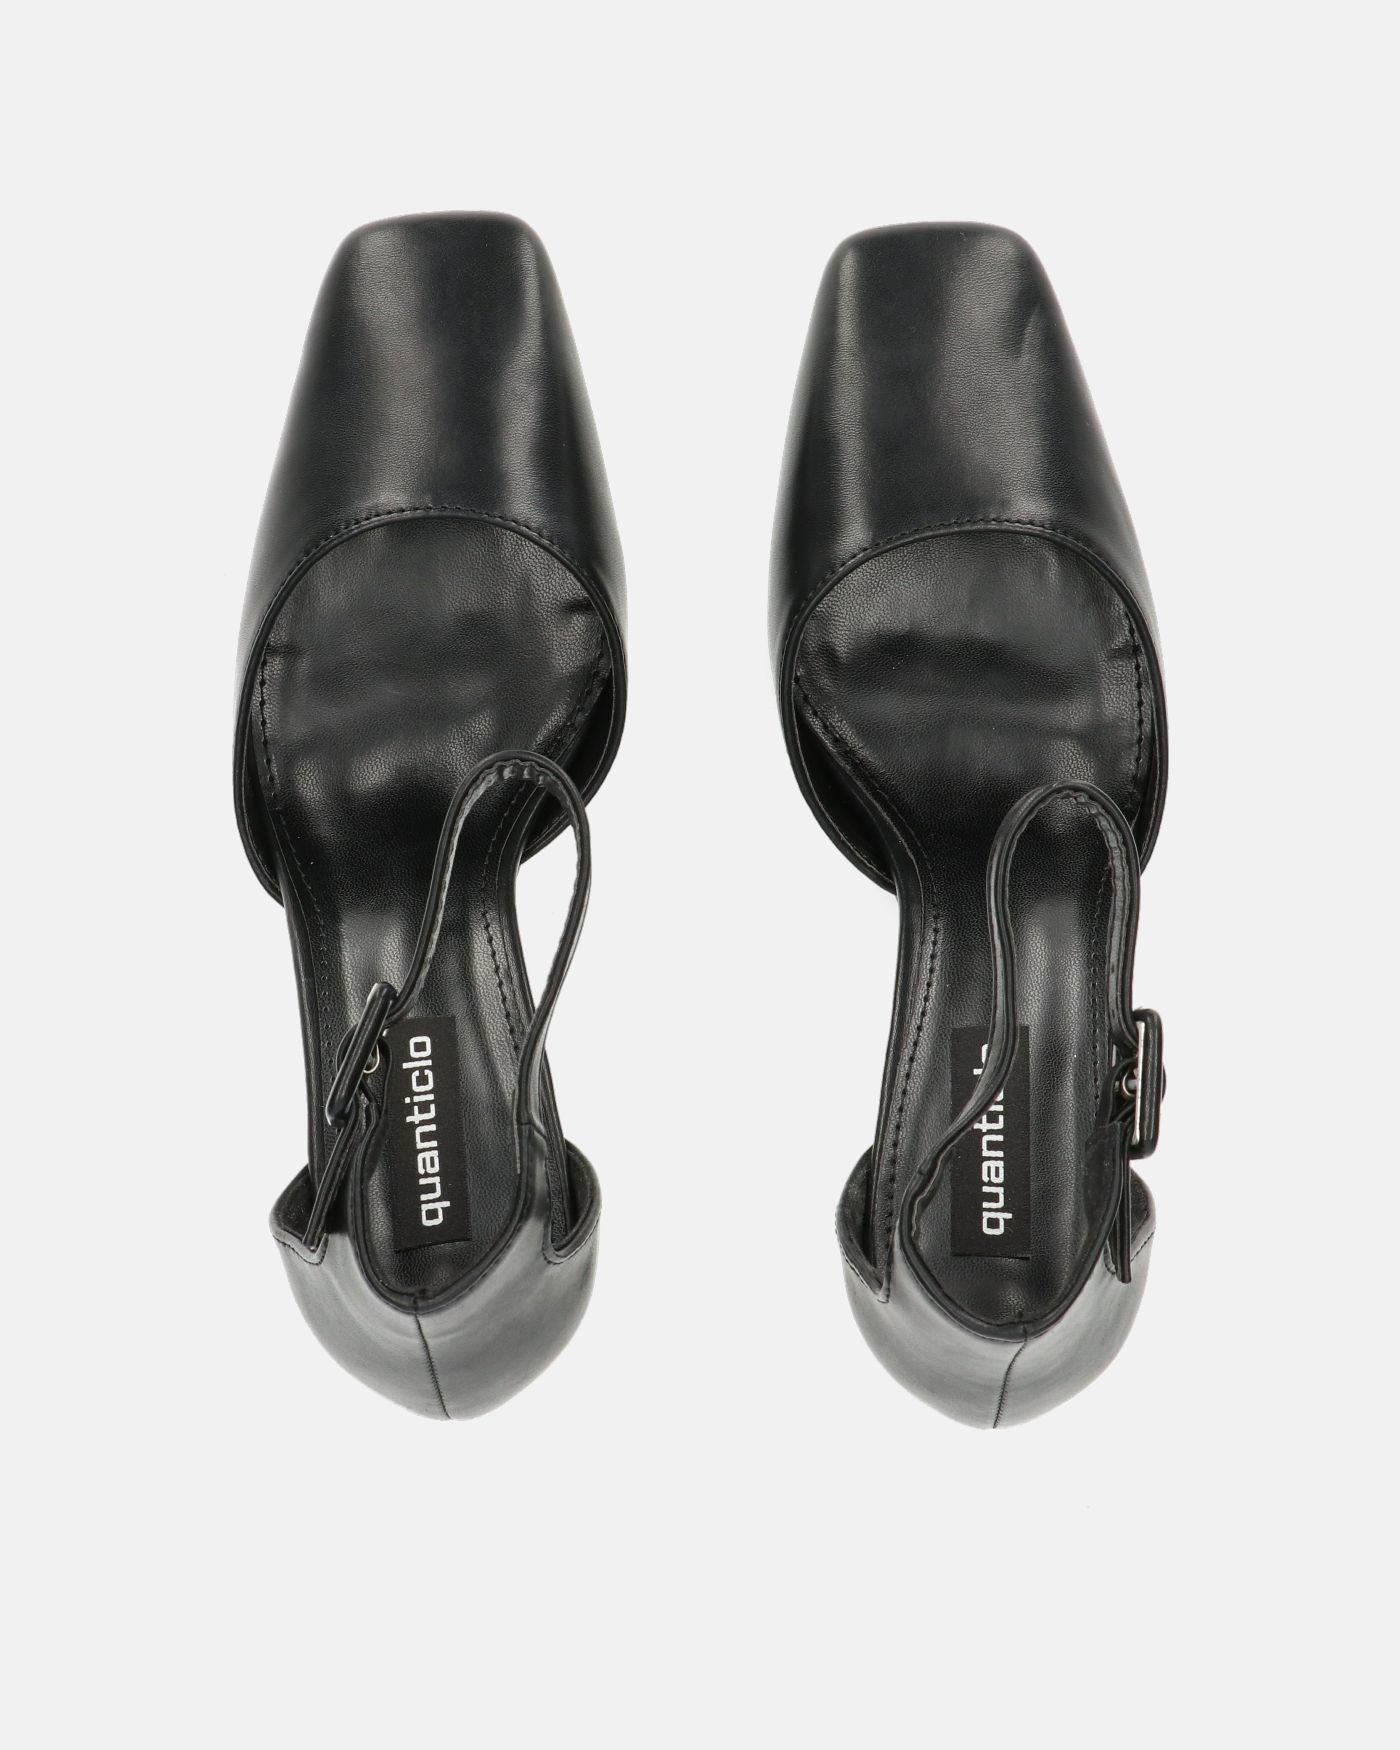 POLINA - scarpe nere con tacco e cinturino